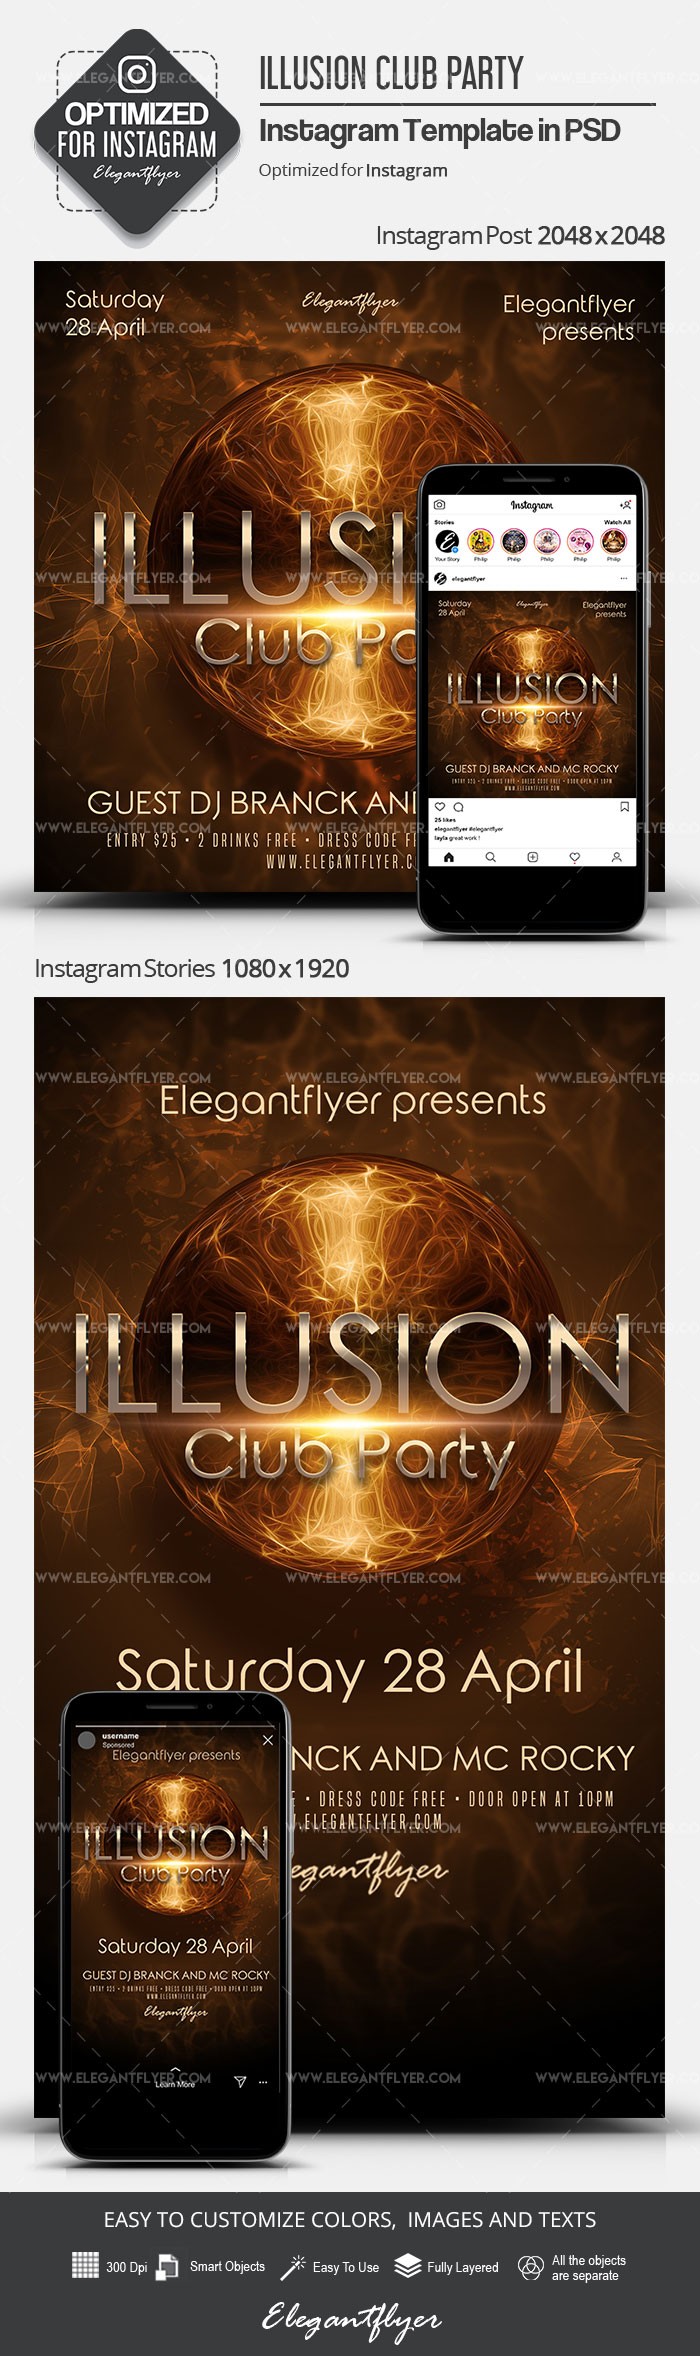 Festa del Illusion Club by ElegantFlyer